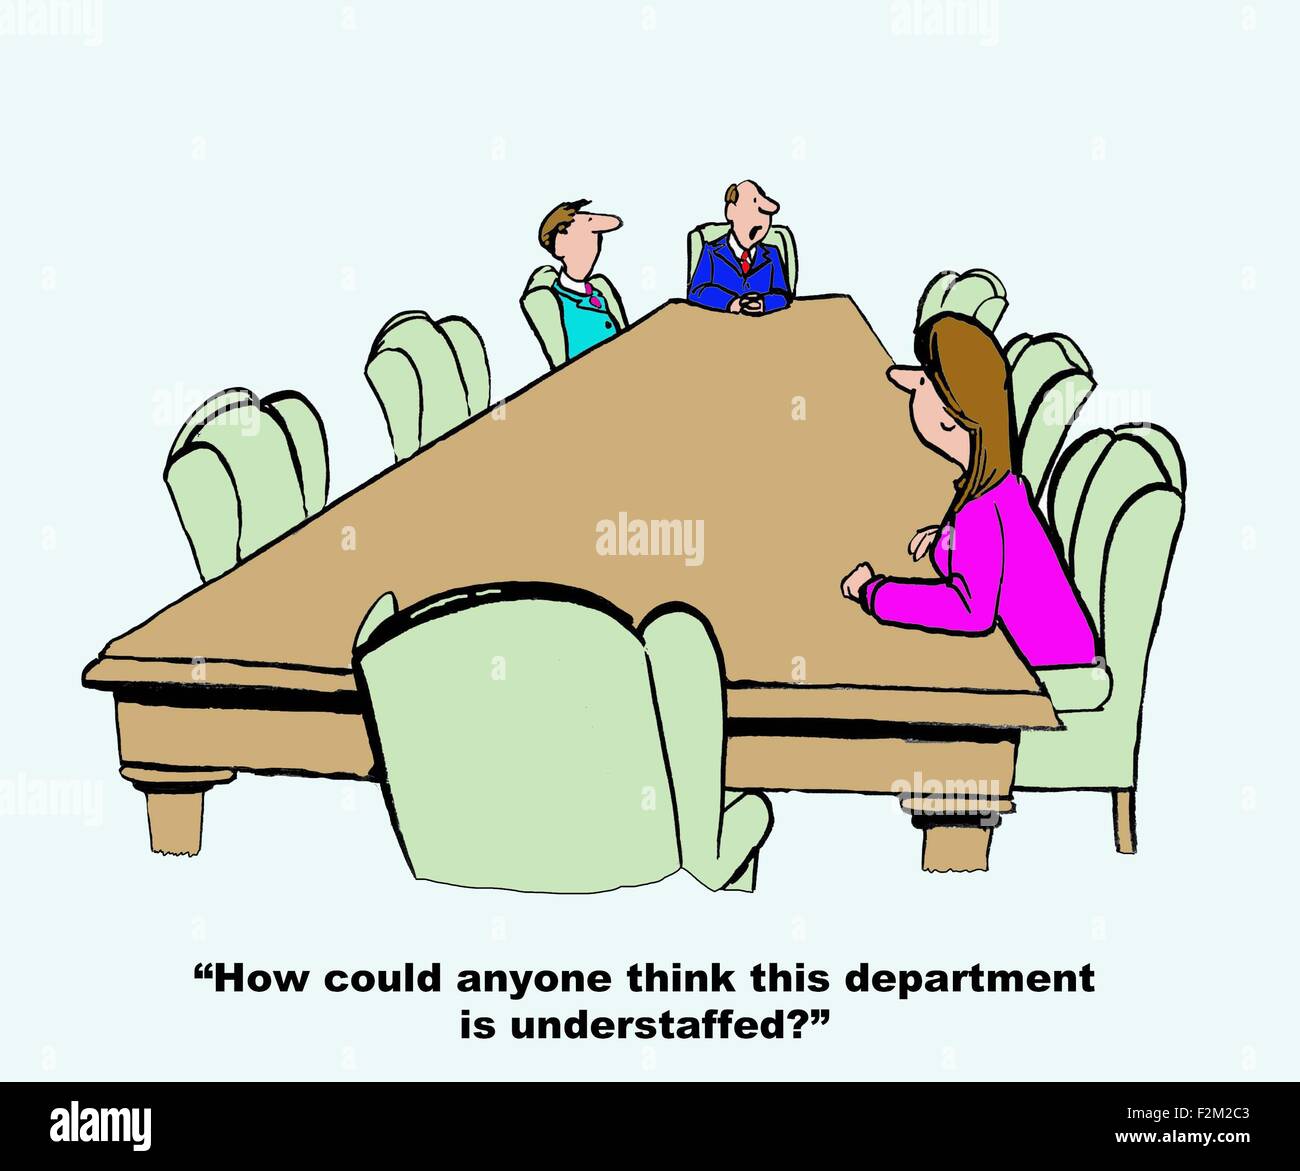 Geschäft cartoon zeigt nur drei Personen im großen Sitzungssaal, "wie könnte jemand denken, dass diese Abteilung unterbesetzt ist?" Stockfoto